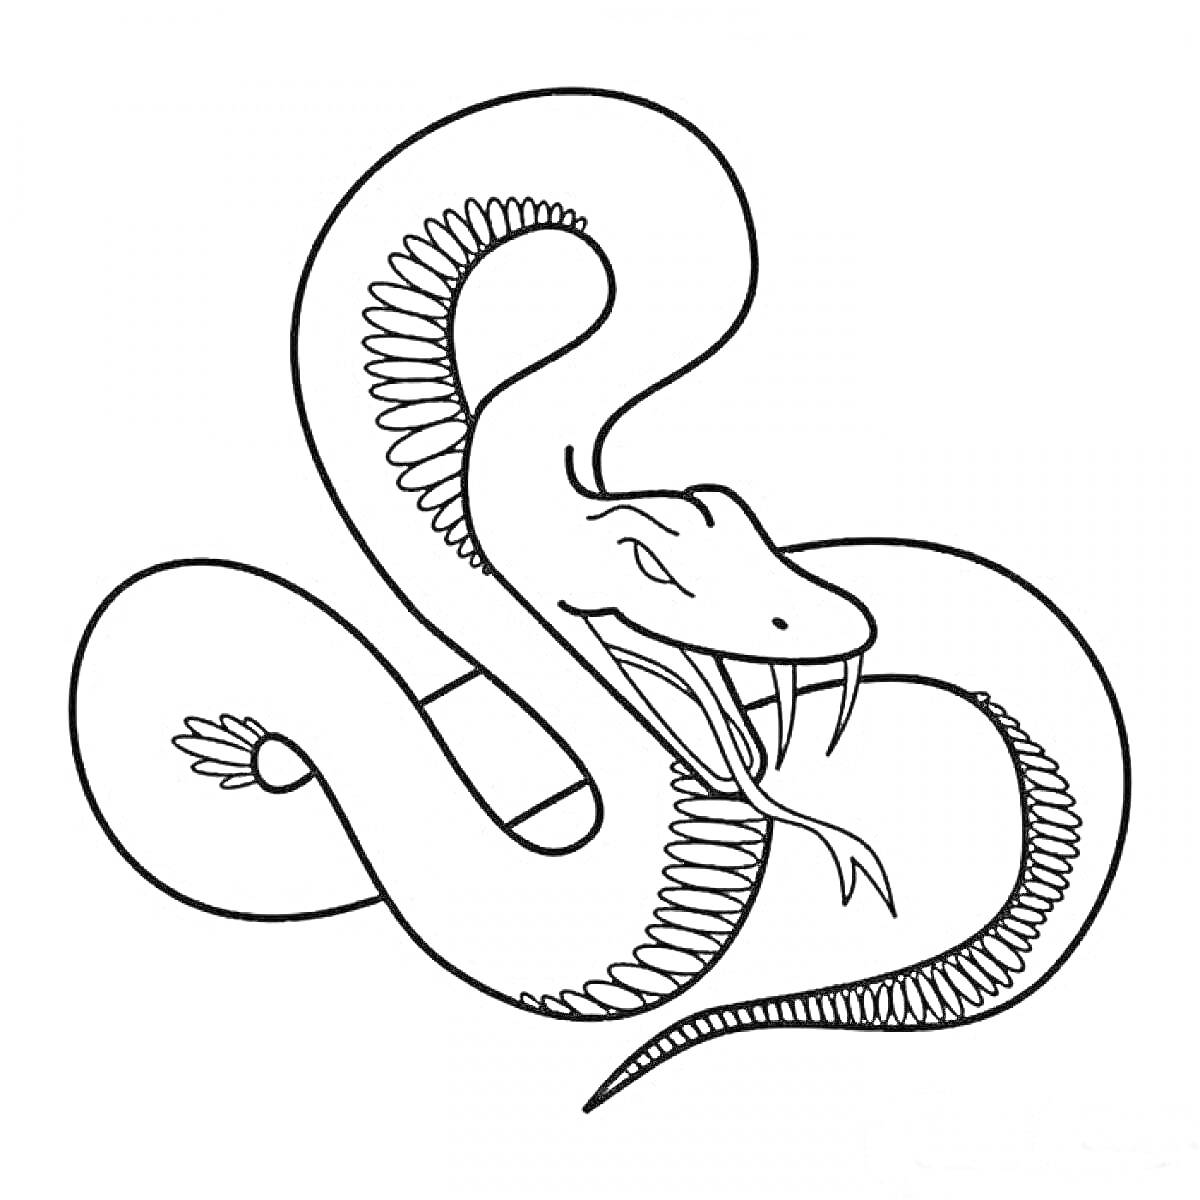 Змея с открытым ртом и высунутым языком